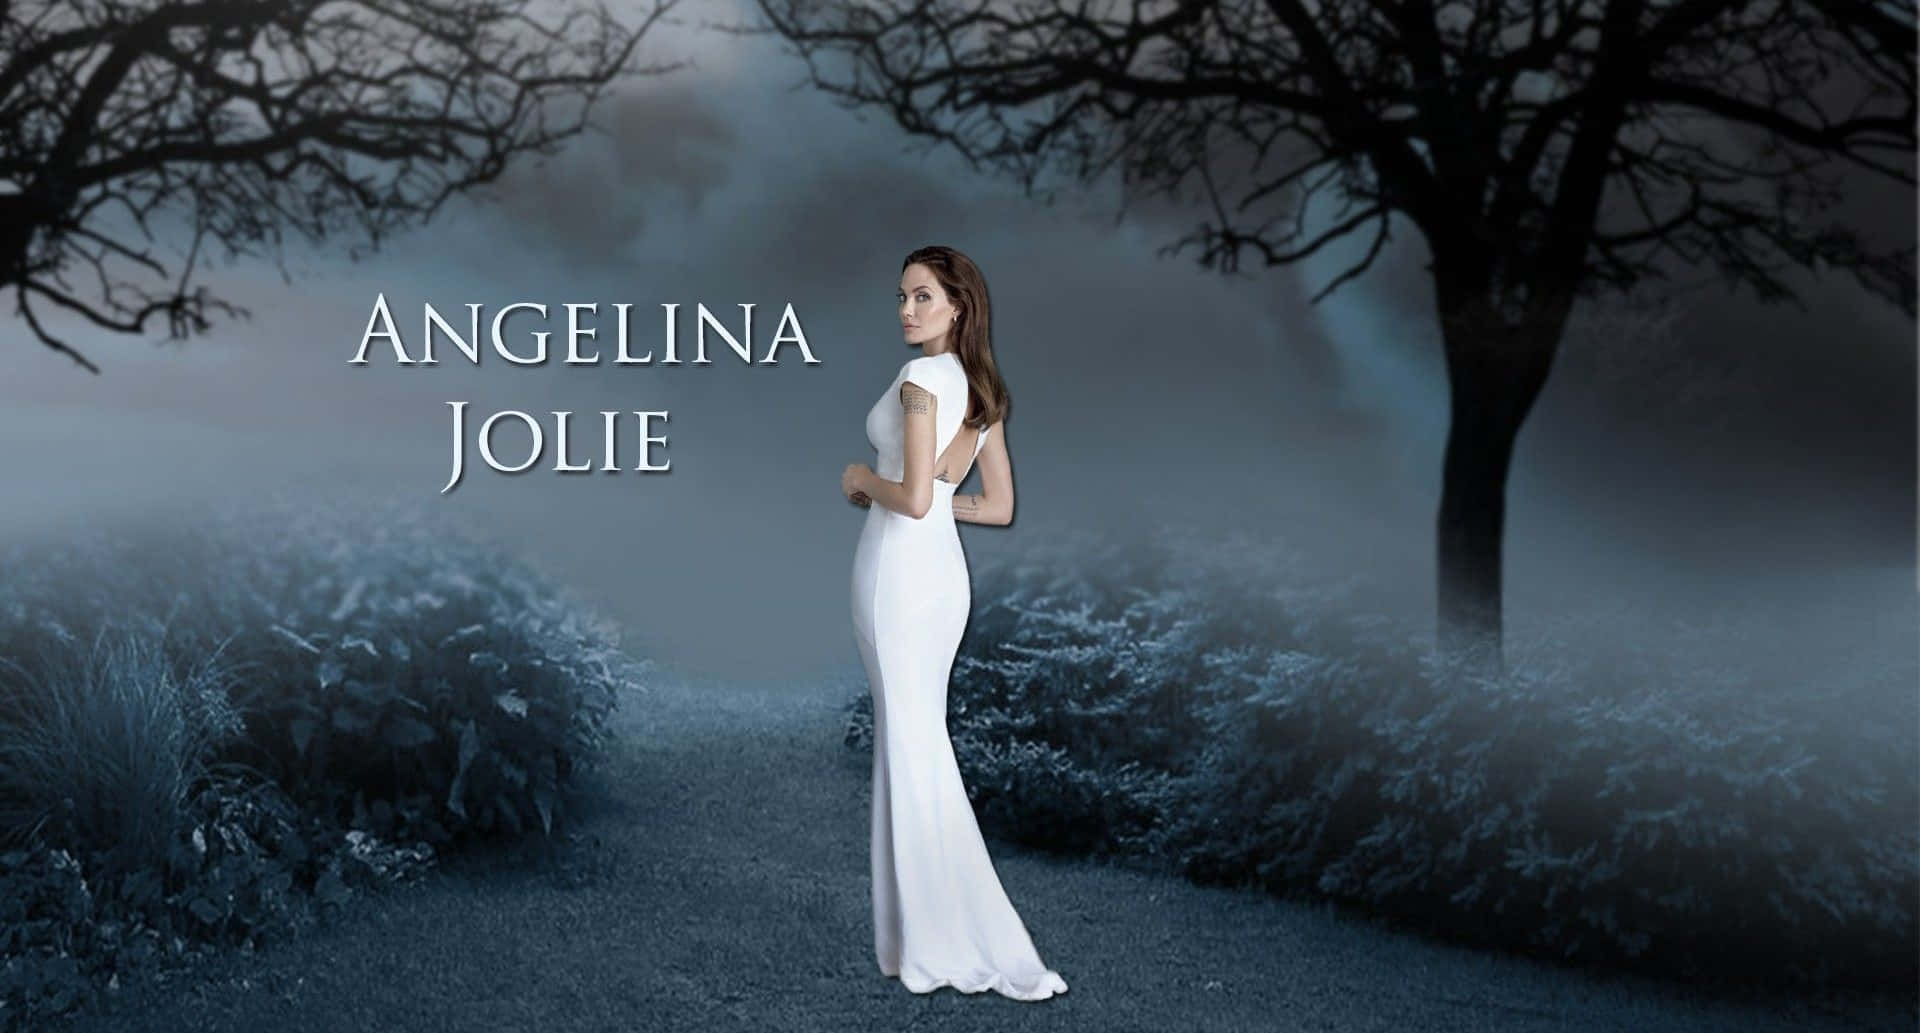 Angelinajolie, Skuespillerinde Fra Hollywood's A-liste.